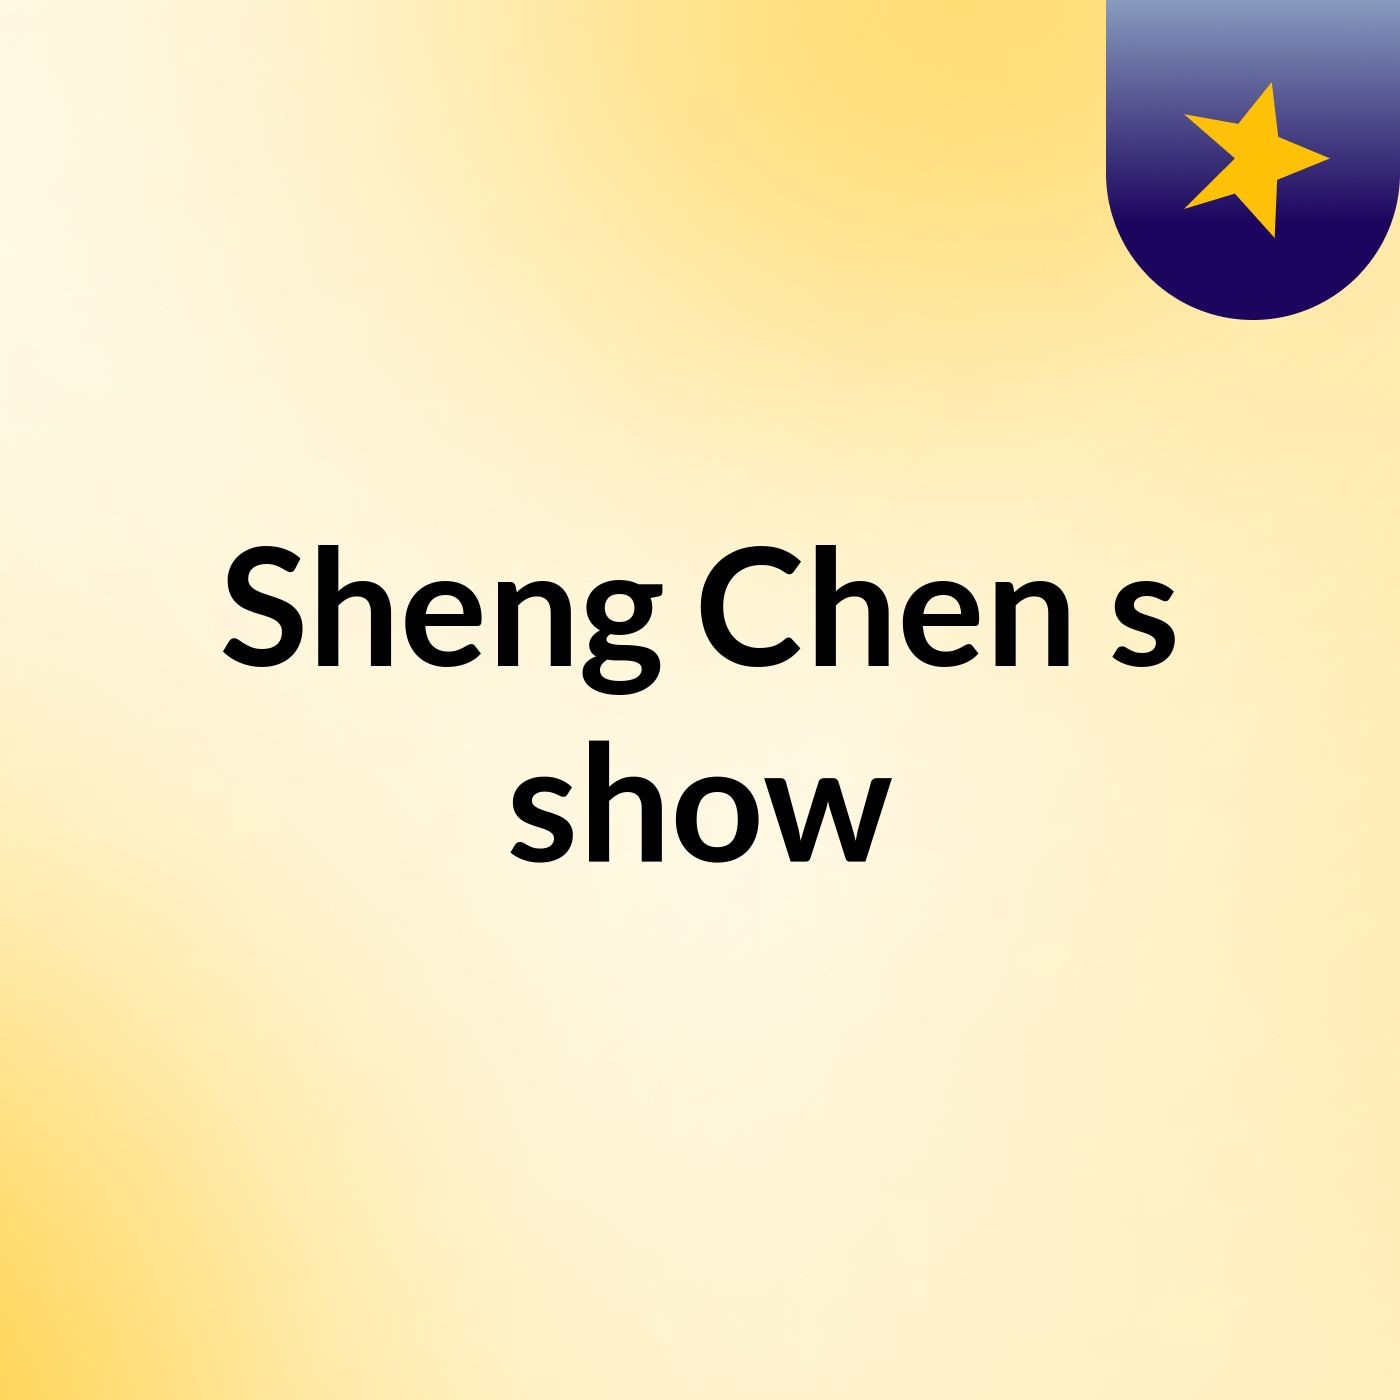 Sheng Chen's show